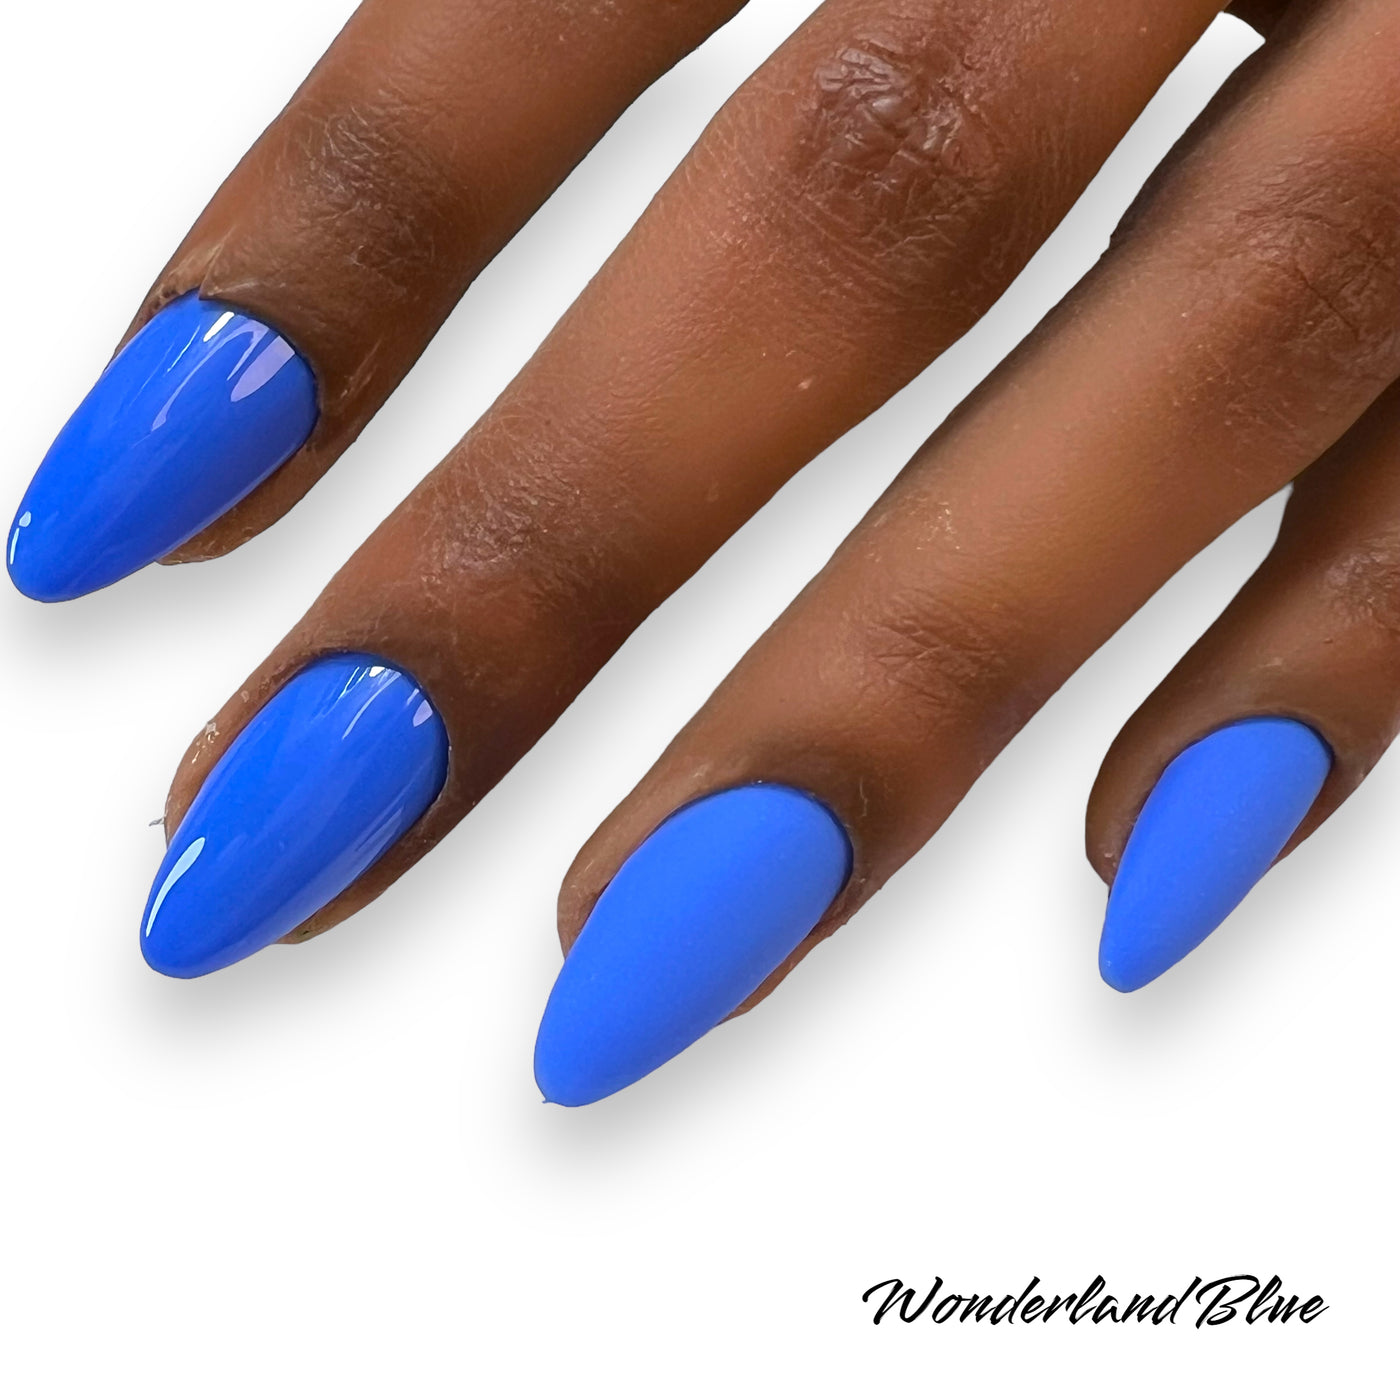 Wonderland Blue